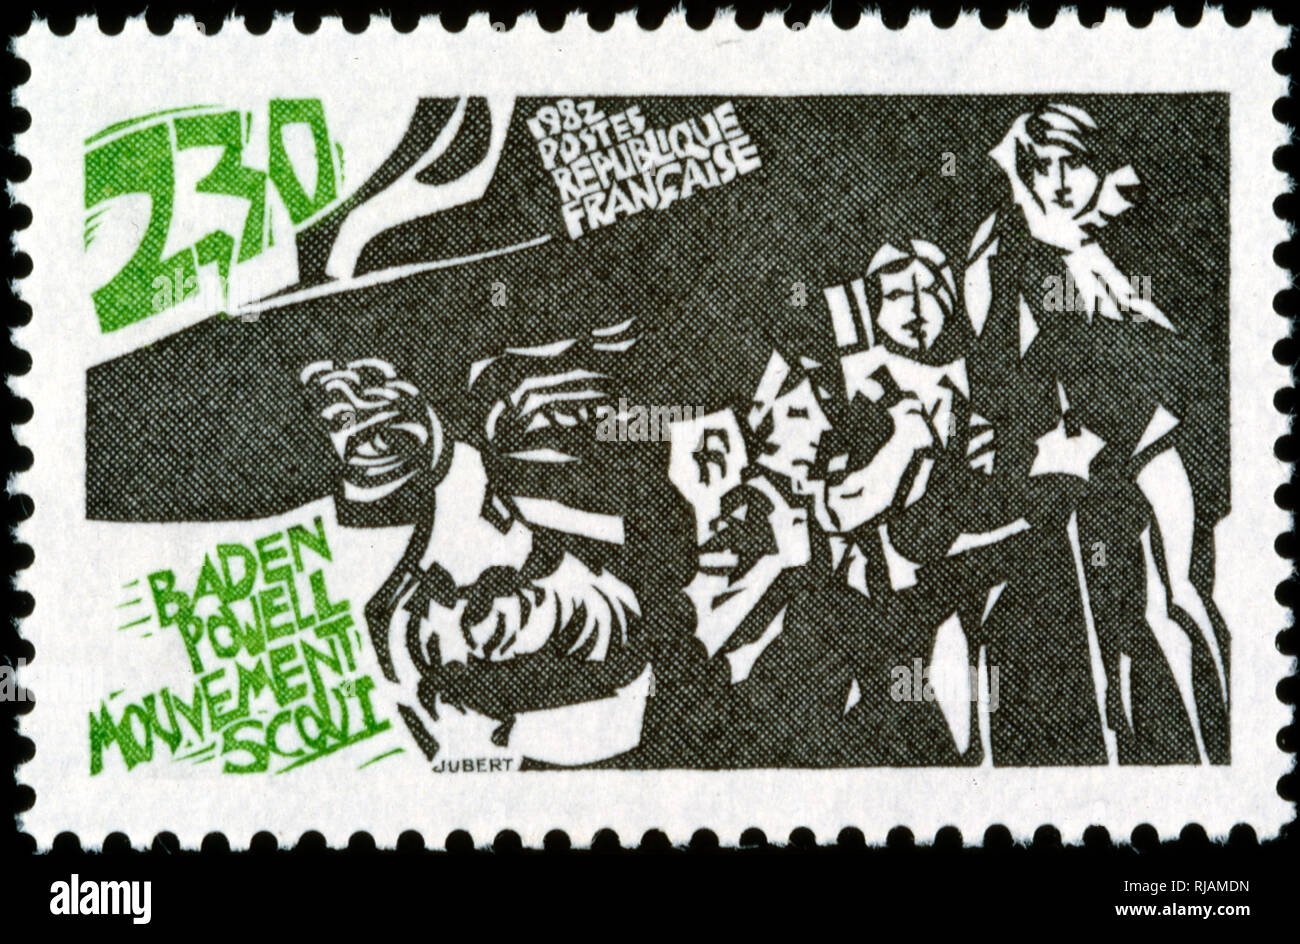 1982, französische Briefmarke markiert das 75-jährige Jubiläum der Pfadfinderbewegung, Robert Baden-Powell gegründet 1907 Stockfoto